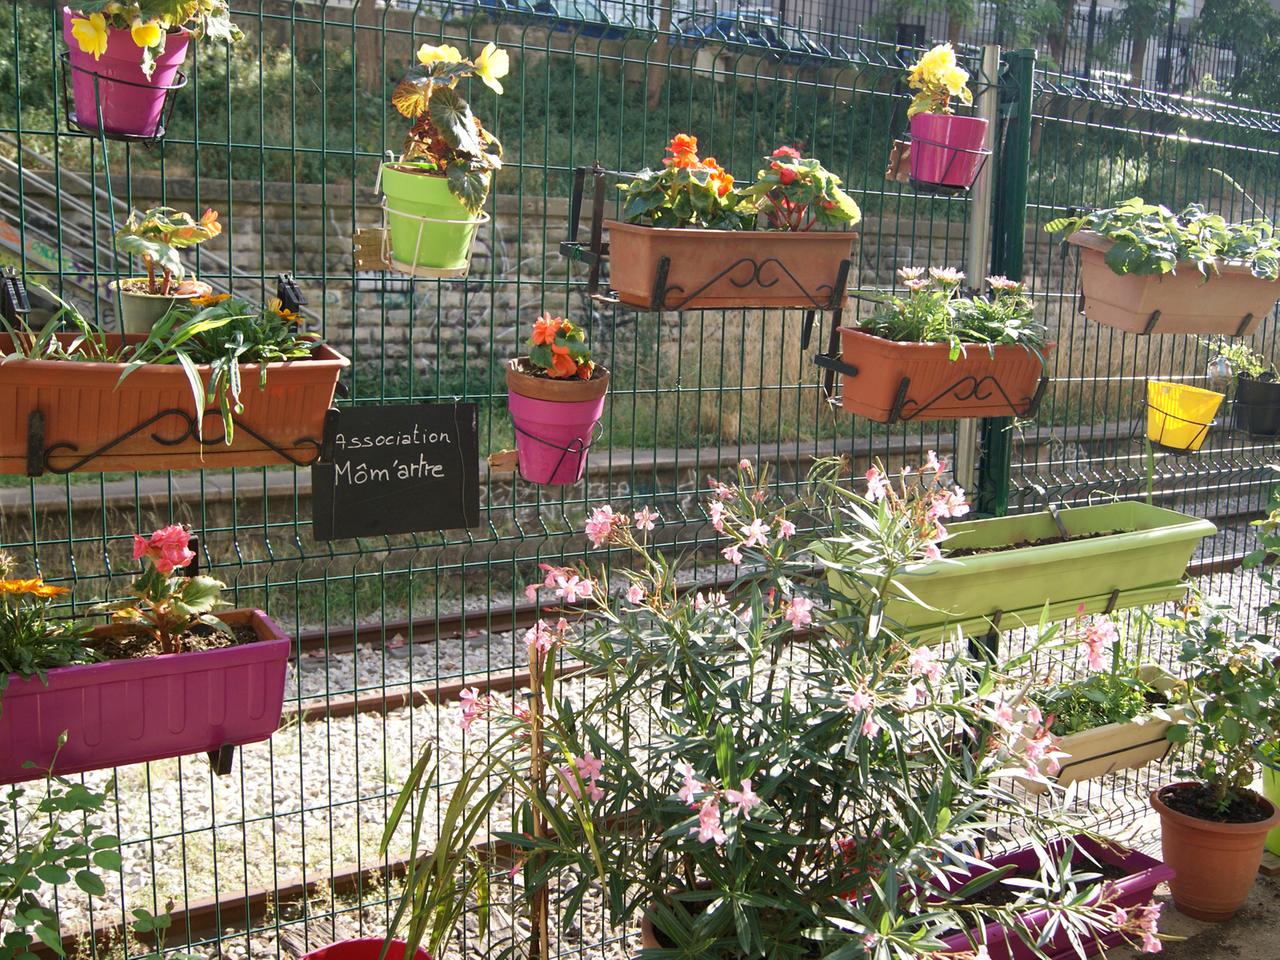 Blumenkästen am Zaun eines Gemeinschaftsgartens in Paris. In der Metropole verschaffen sich Städter mit gemeinschaftlichen Gärten einen natürlichen Lichtblick.